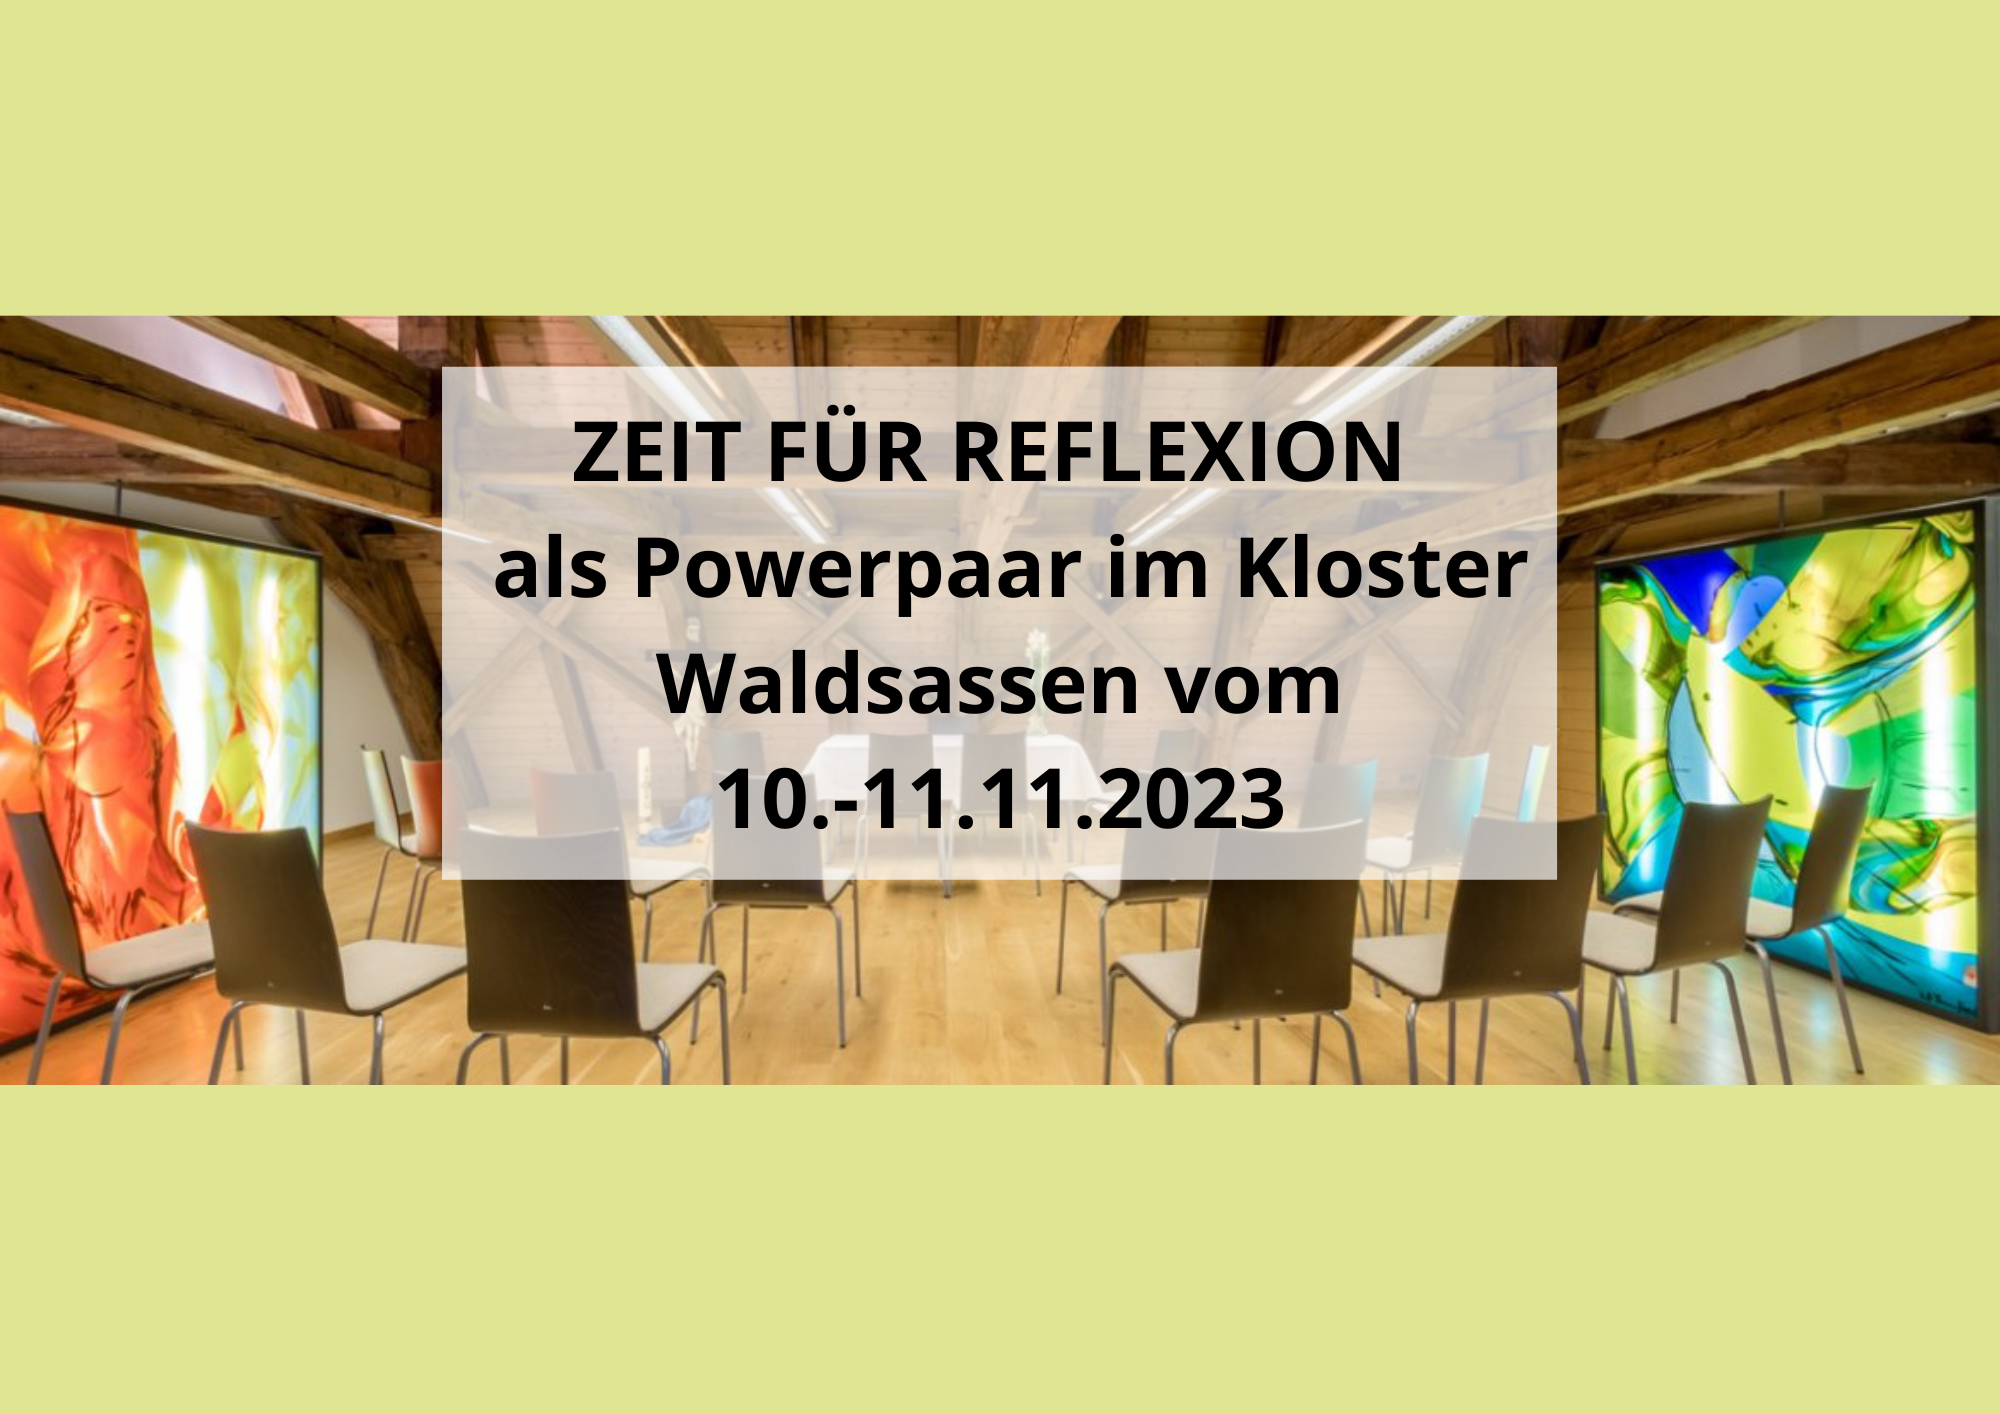 Powerpaare | Keller Partner ZEIT FÜR REFLEXION  als Powerpaar im Kloster Waldsassen vom 10.11. bis 11.11.2023